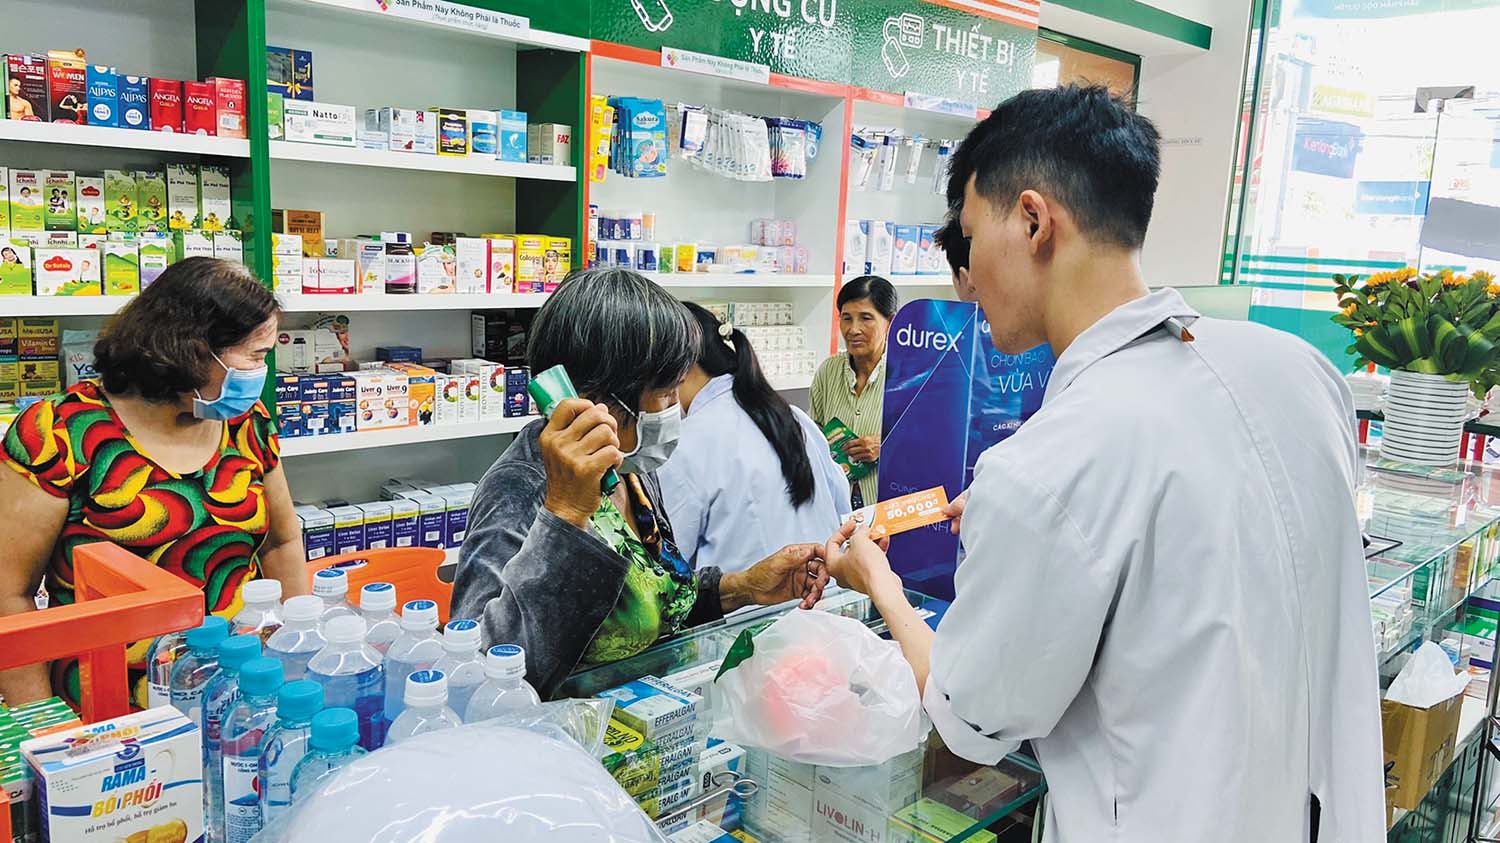 Người dân ngày càng quan tâm tới việc chăm sóc sức khỏe nhiều hơn, làm tăng sức hấp dẫn của thị trường y dược Việt Nam trong mắt các nhà đầu tư